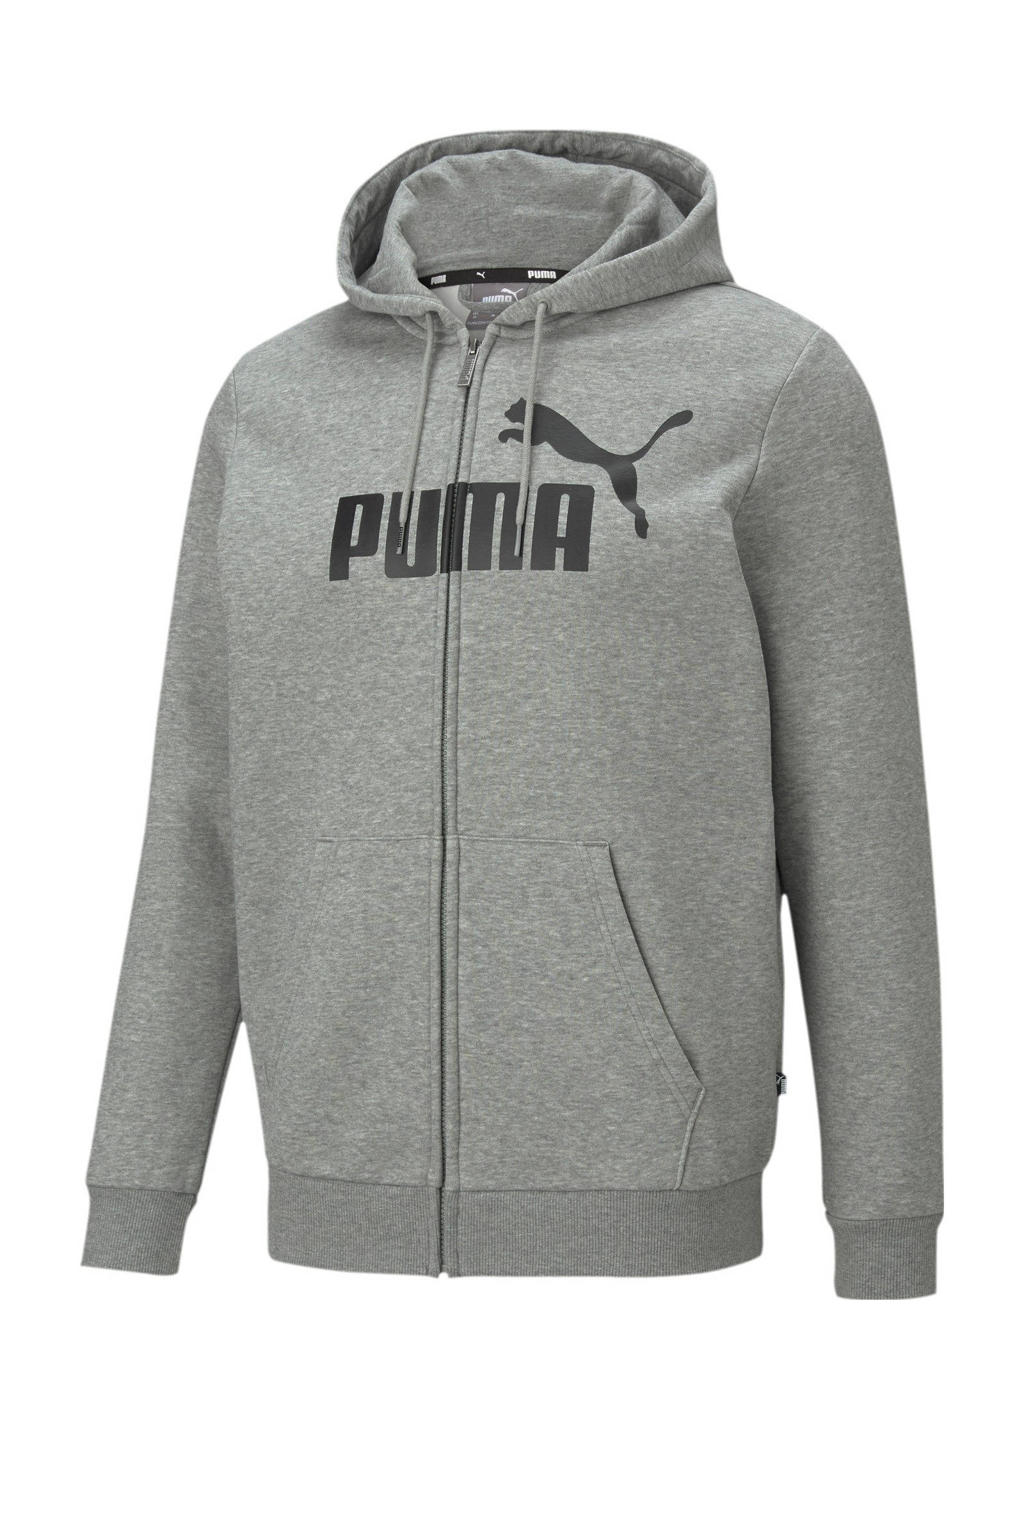 Grijs melange heren Puma sweatvest melange van katoen met logo dessin, lange mouwen, capuchon, ritssluiting en geribde boorden